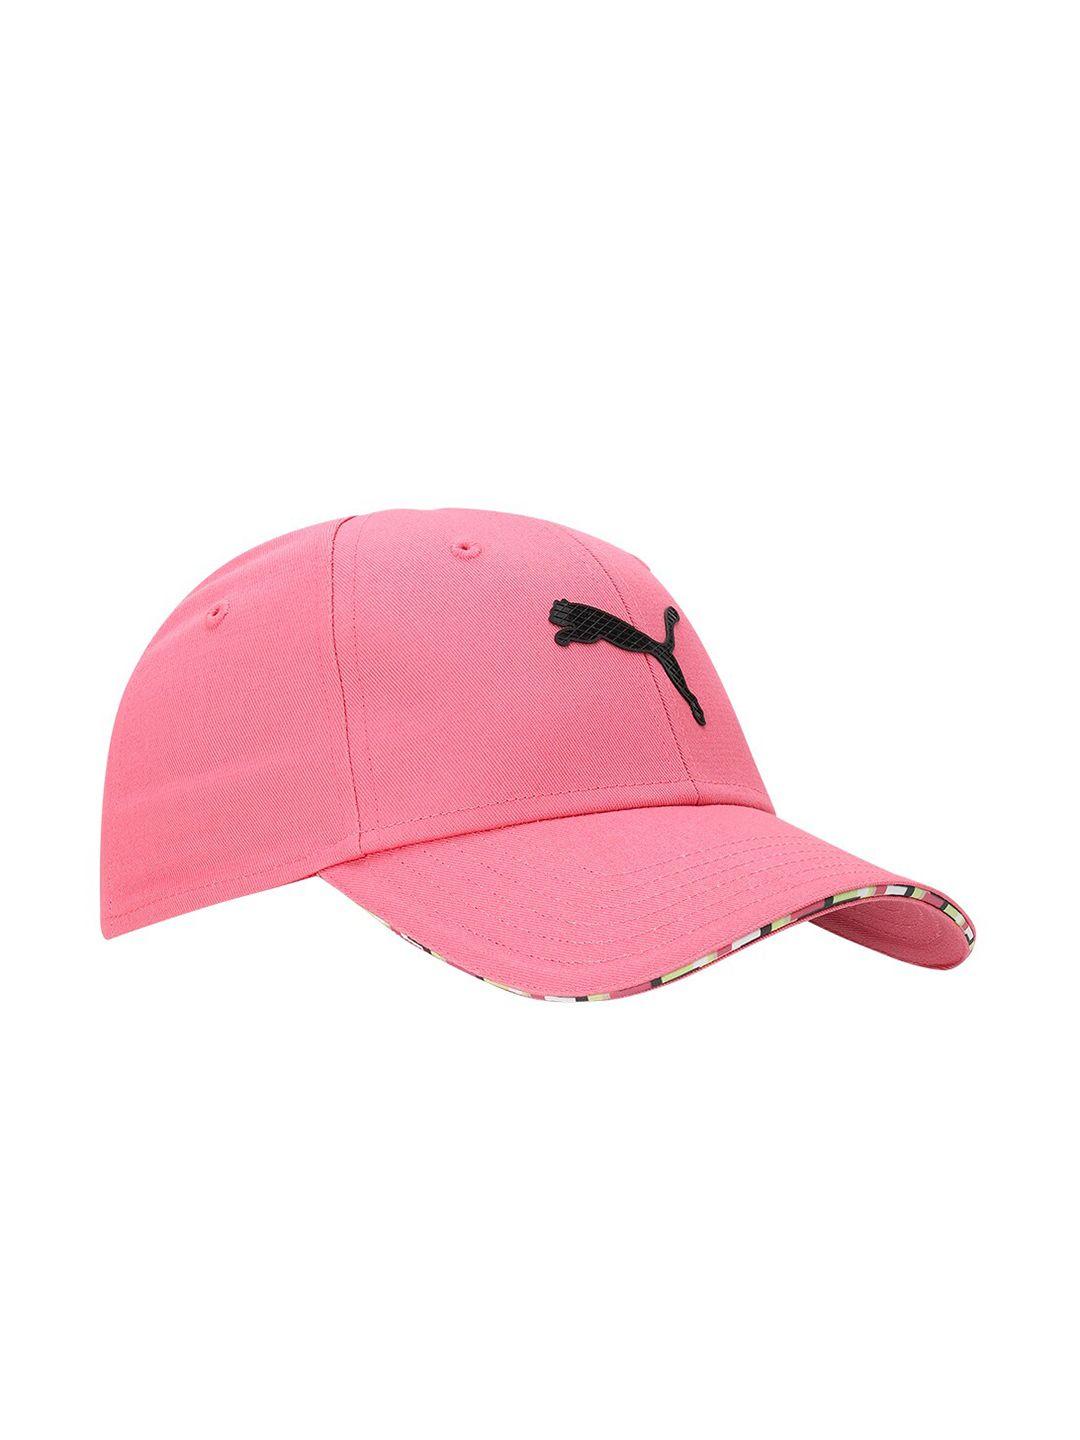 puma men pink caps